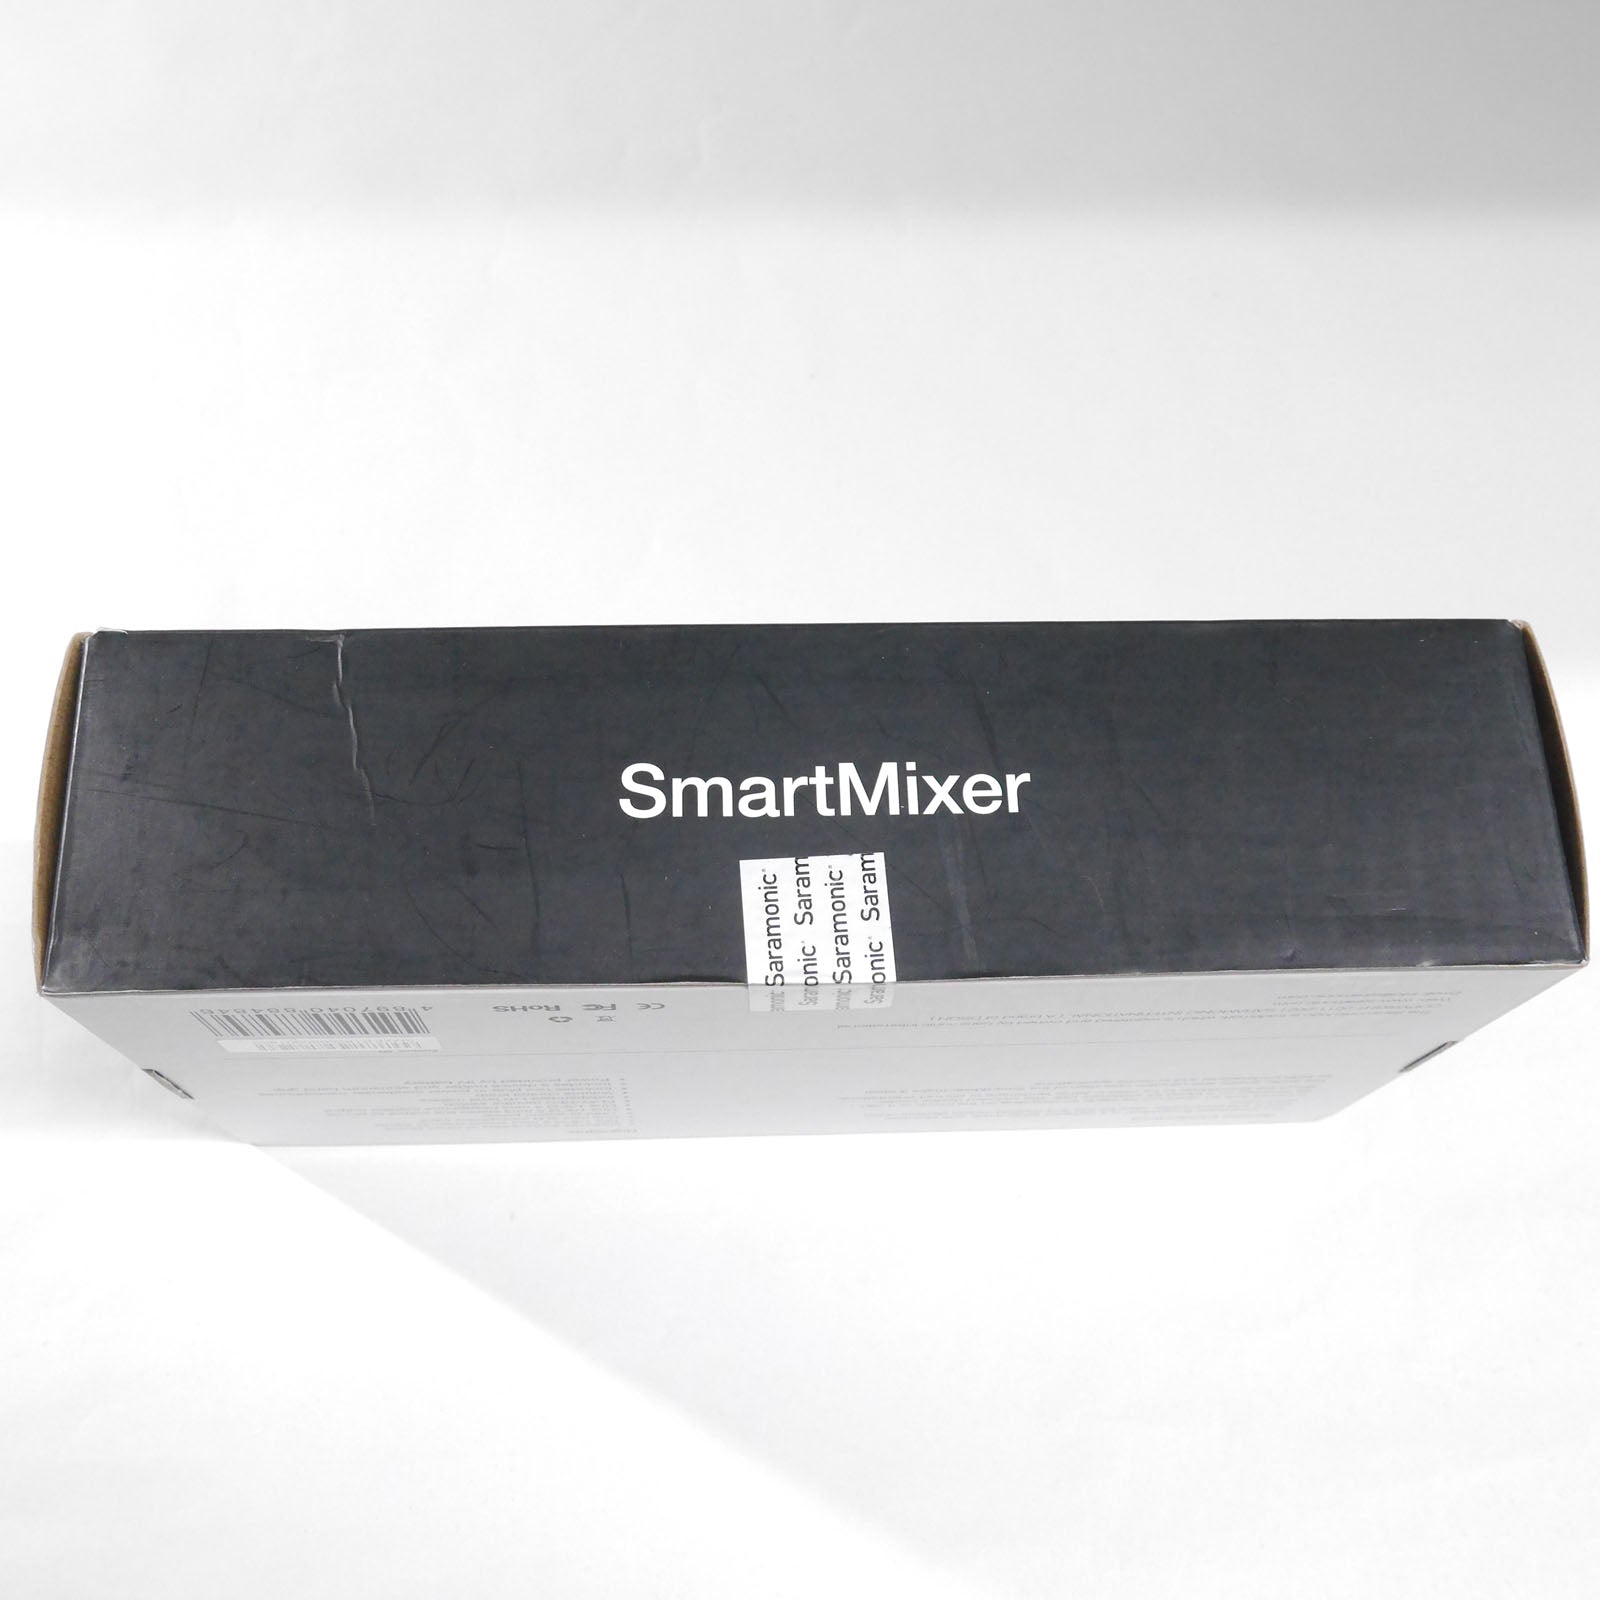 Saramonic(サラモニック) コンパクトオーディオミキサー SmartMixer (未開封品)